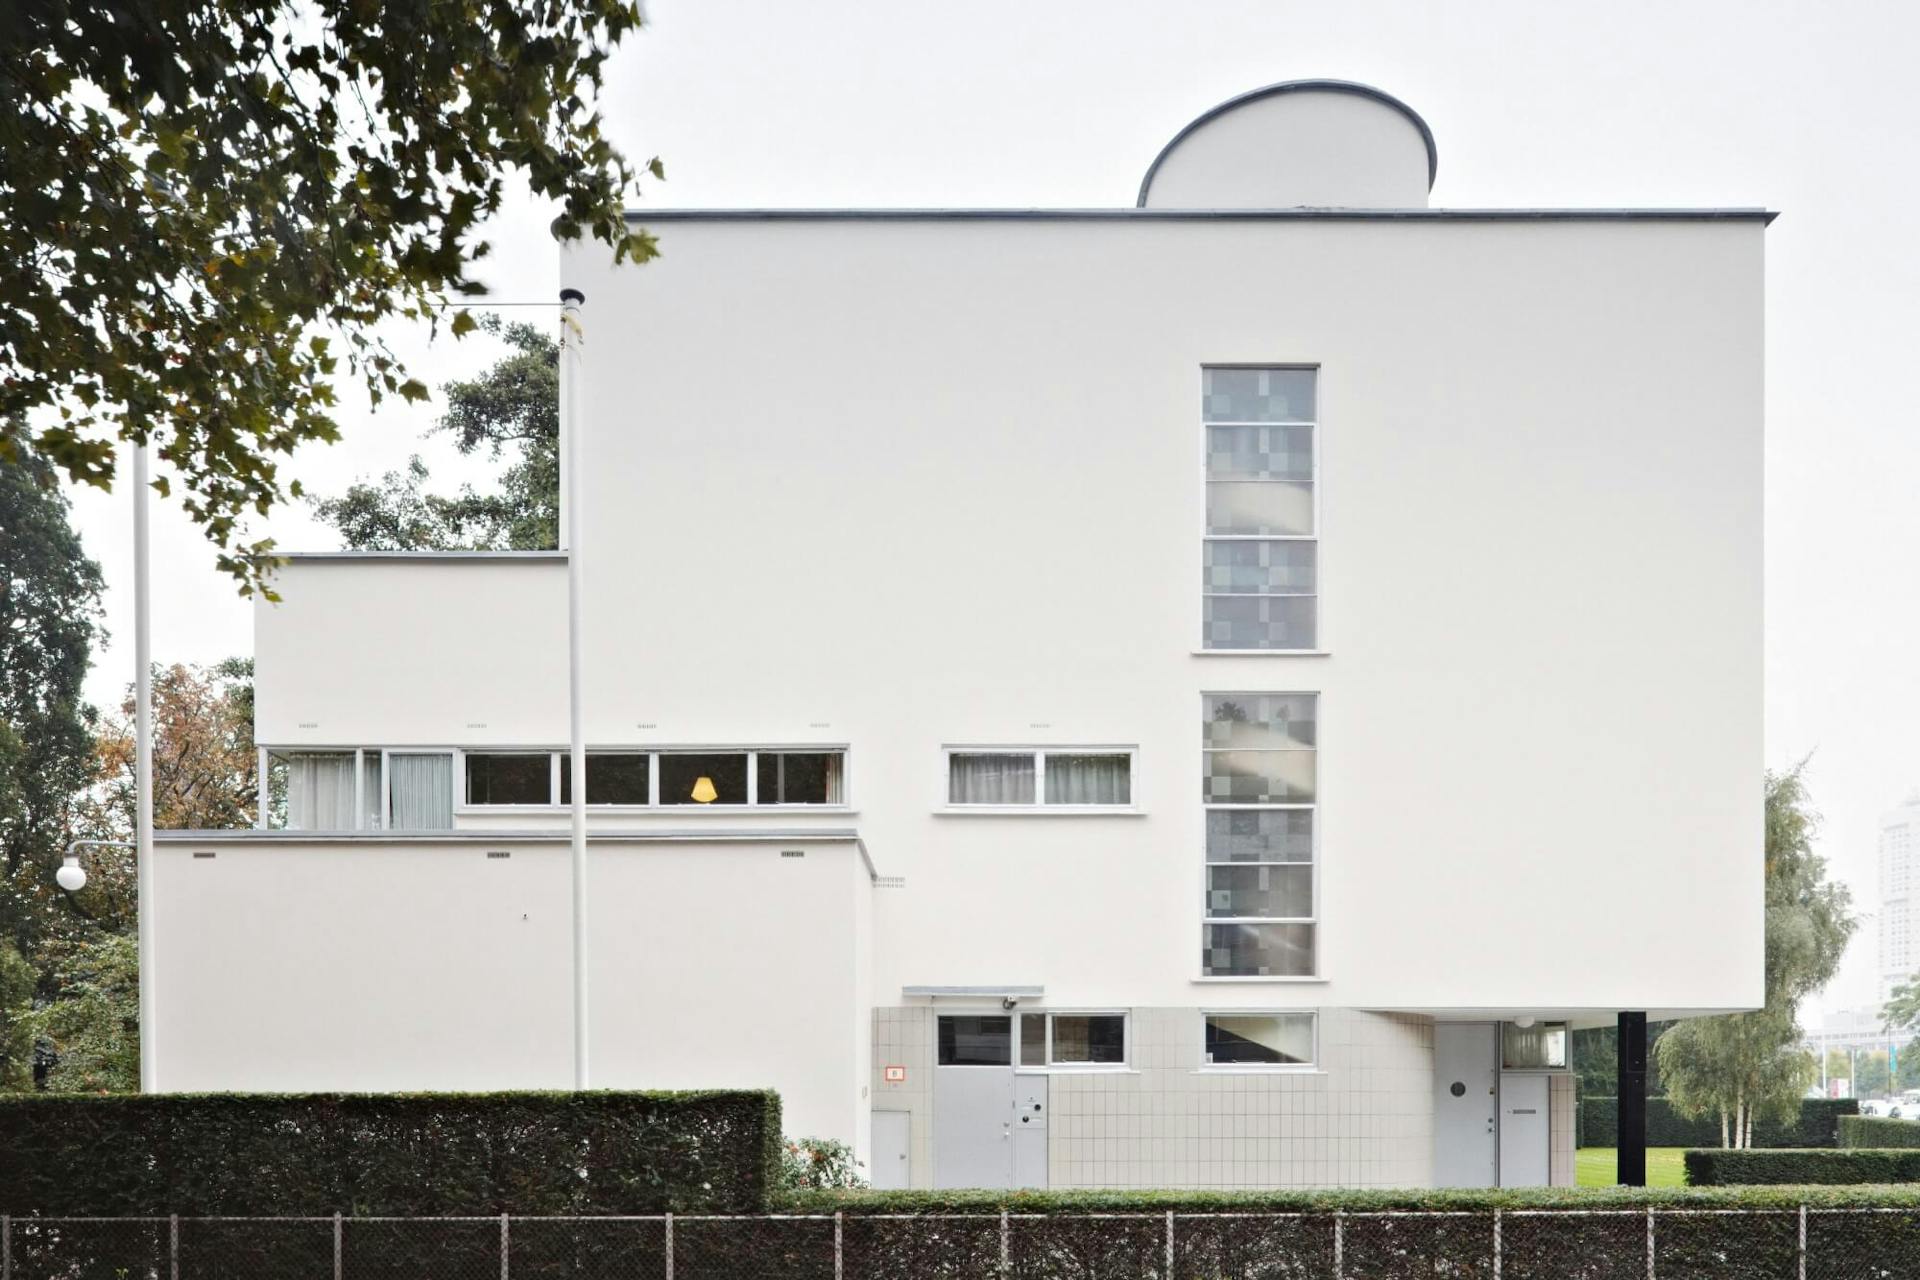 Sonneveld House, exterior and garden. Architecture by Brinkman and Van der Vlugt. Photo Johannes Schwartz